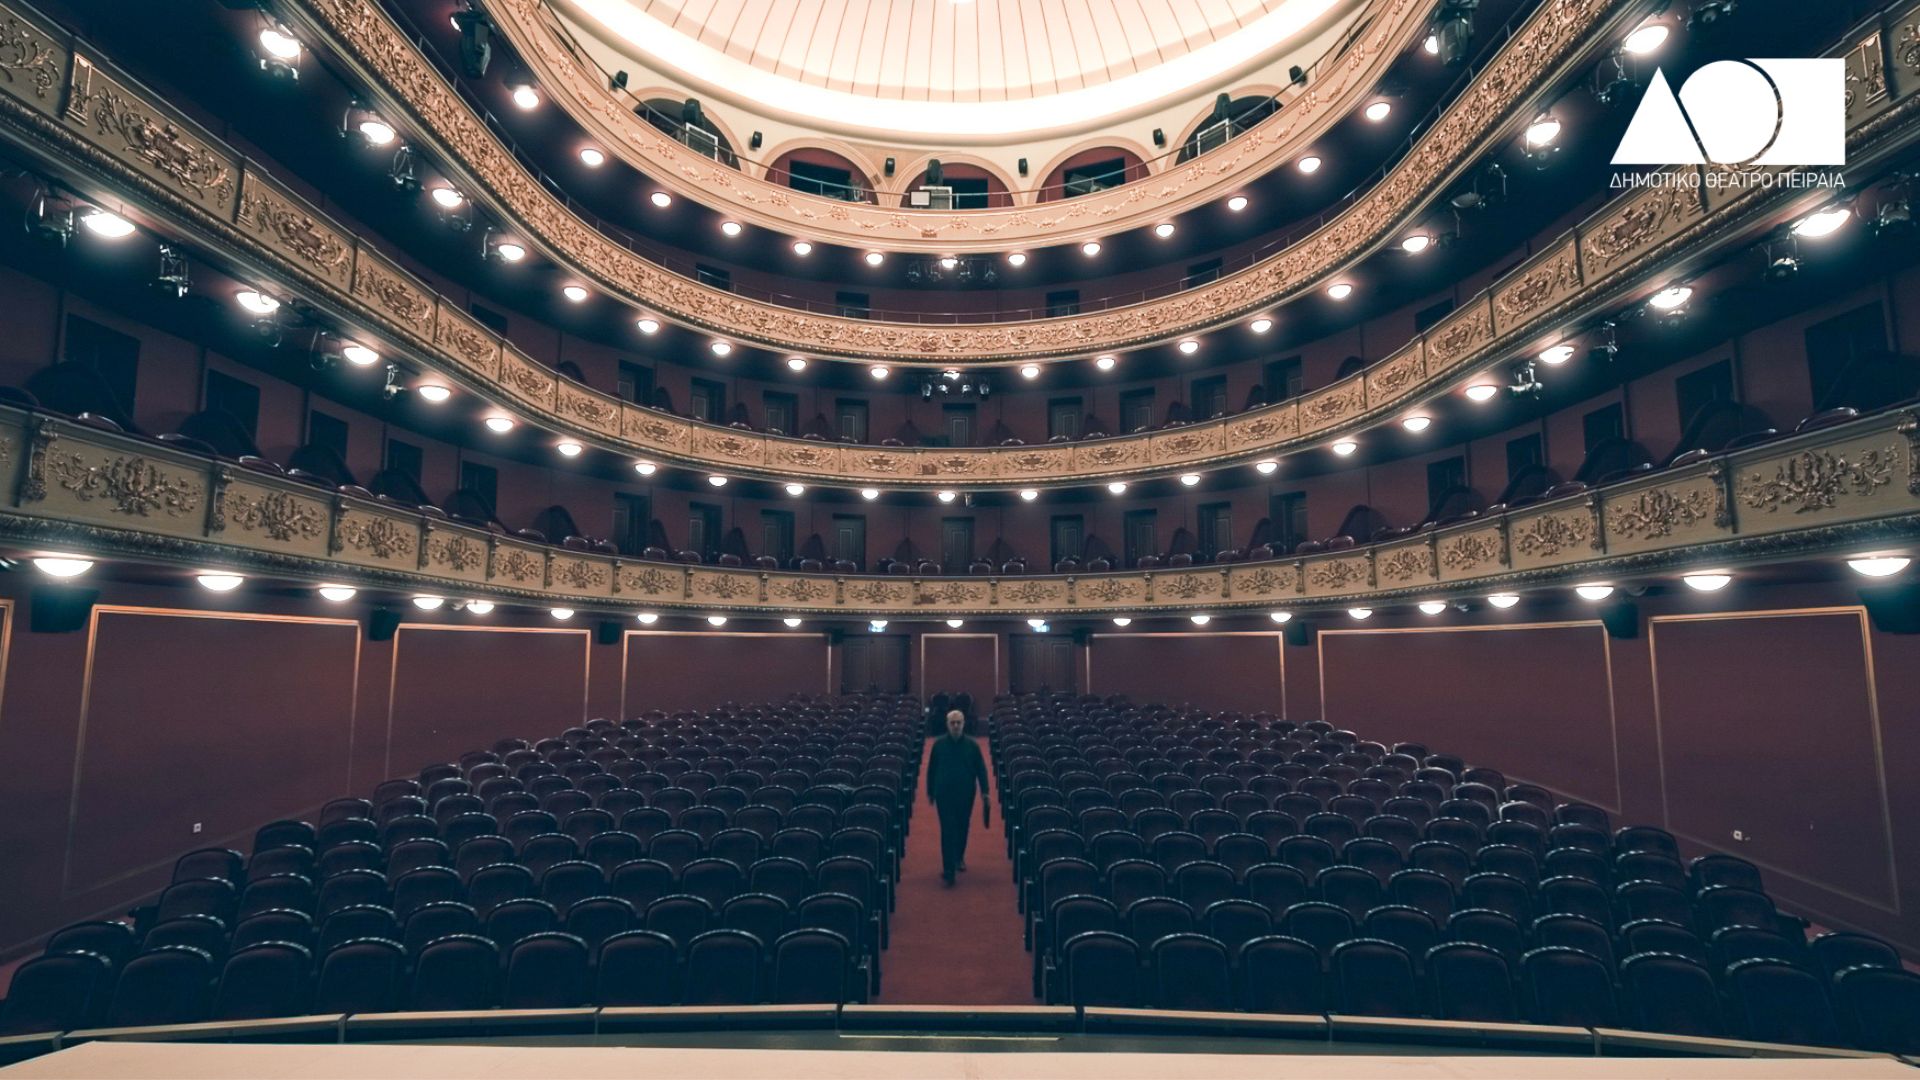 Το Δημοτικό Θέατρο Πειραιά γιορτάζει την Παγκόσμια Ημέρα Θεάτρου με τον κορυφαίο Έλληνα ηθοποιό Δημήτρη Καταλειφό 